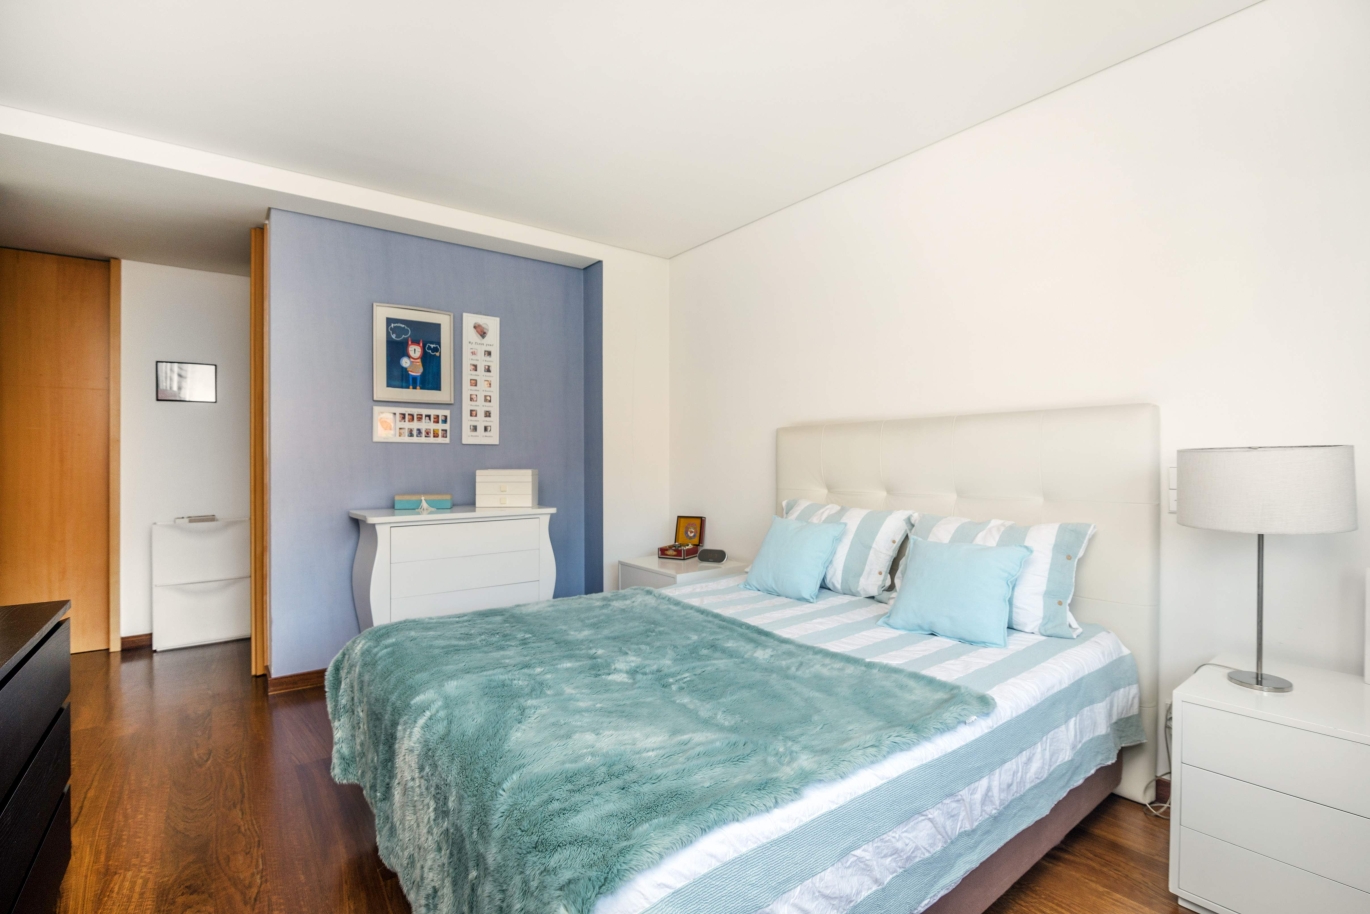 Sale apartment in private condominium w/ river views, Porto, Portugal_121040